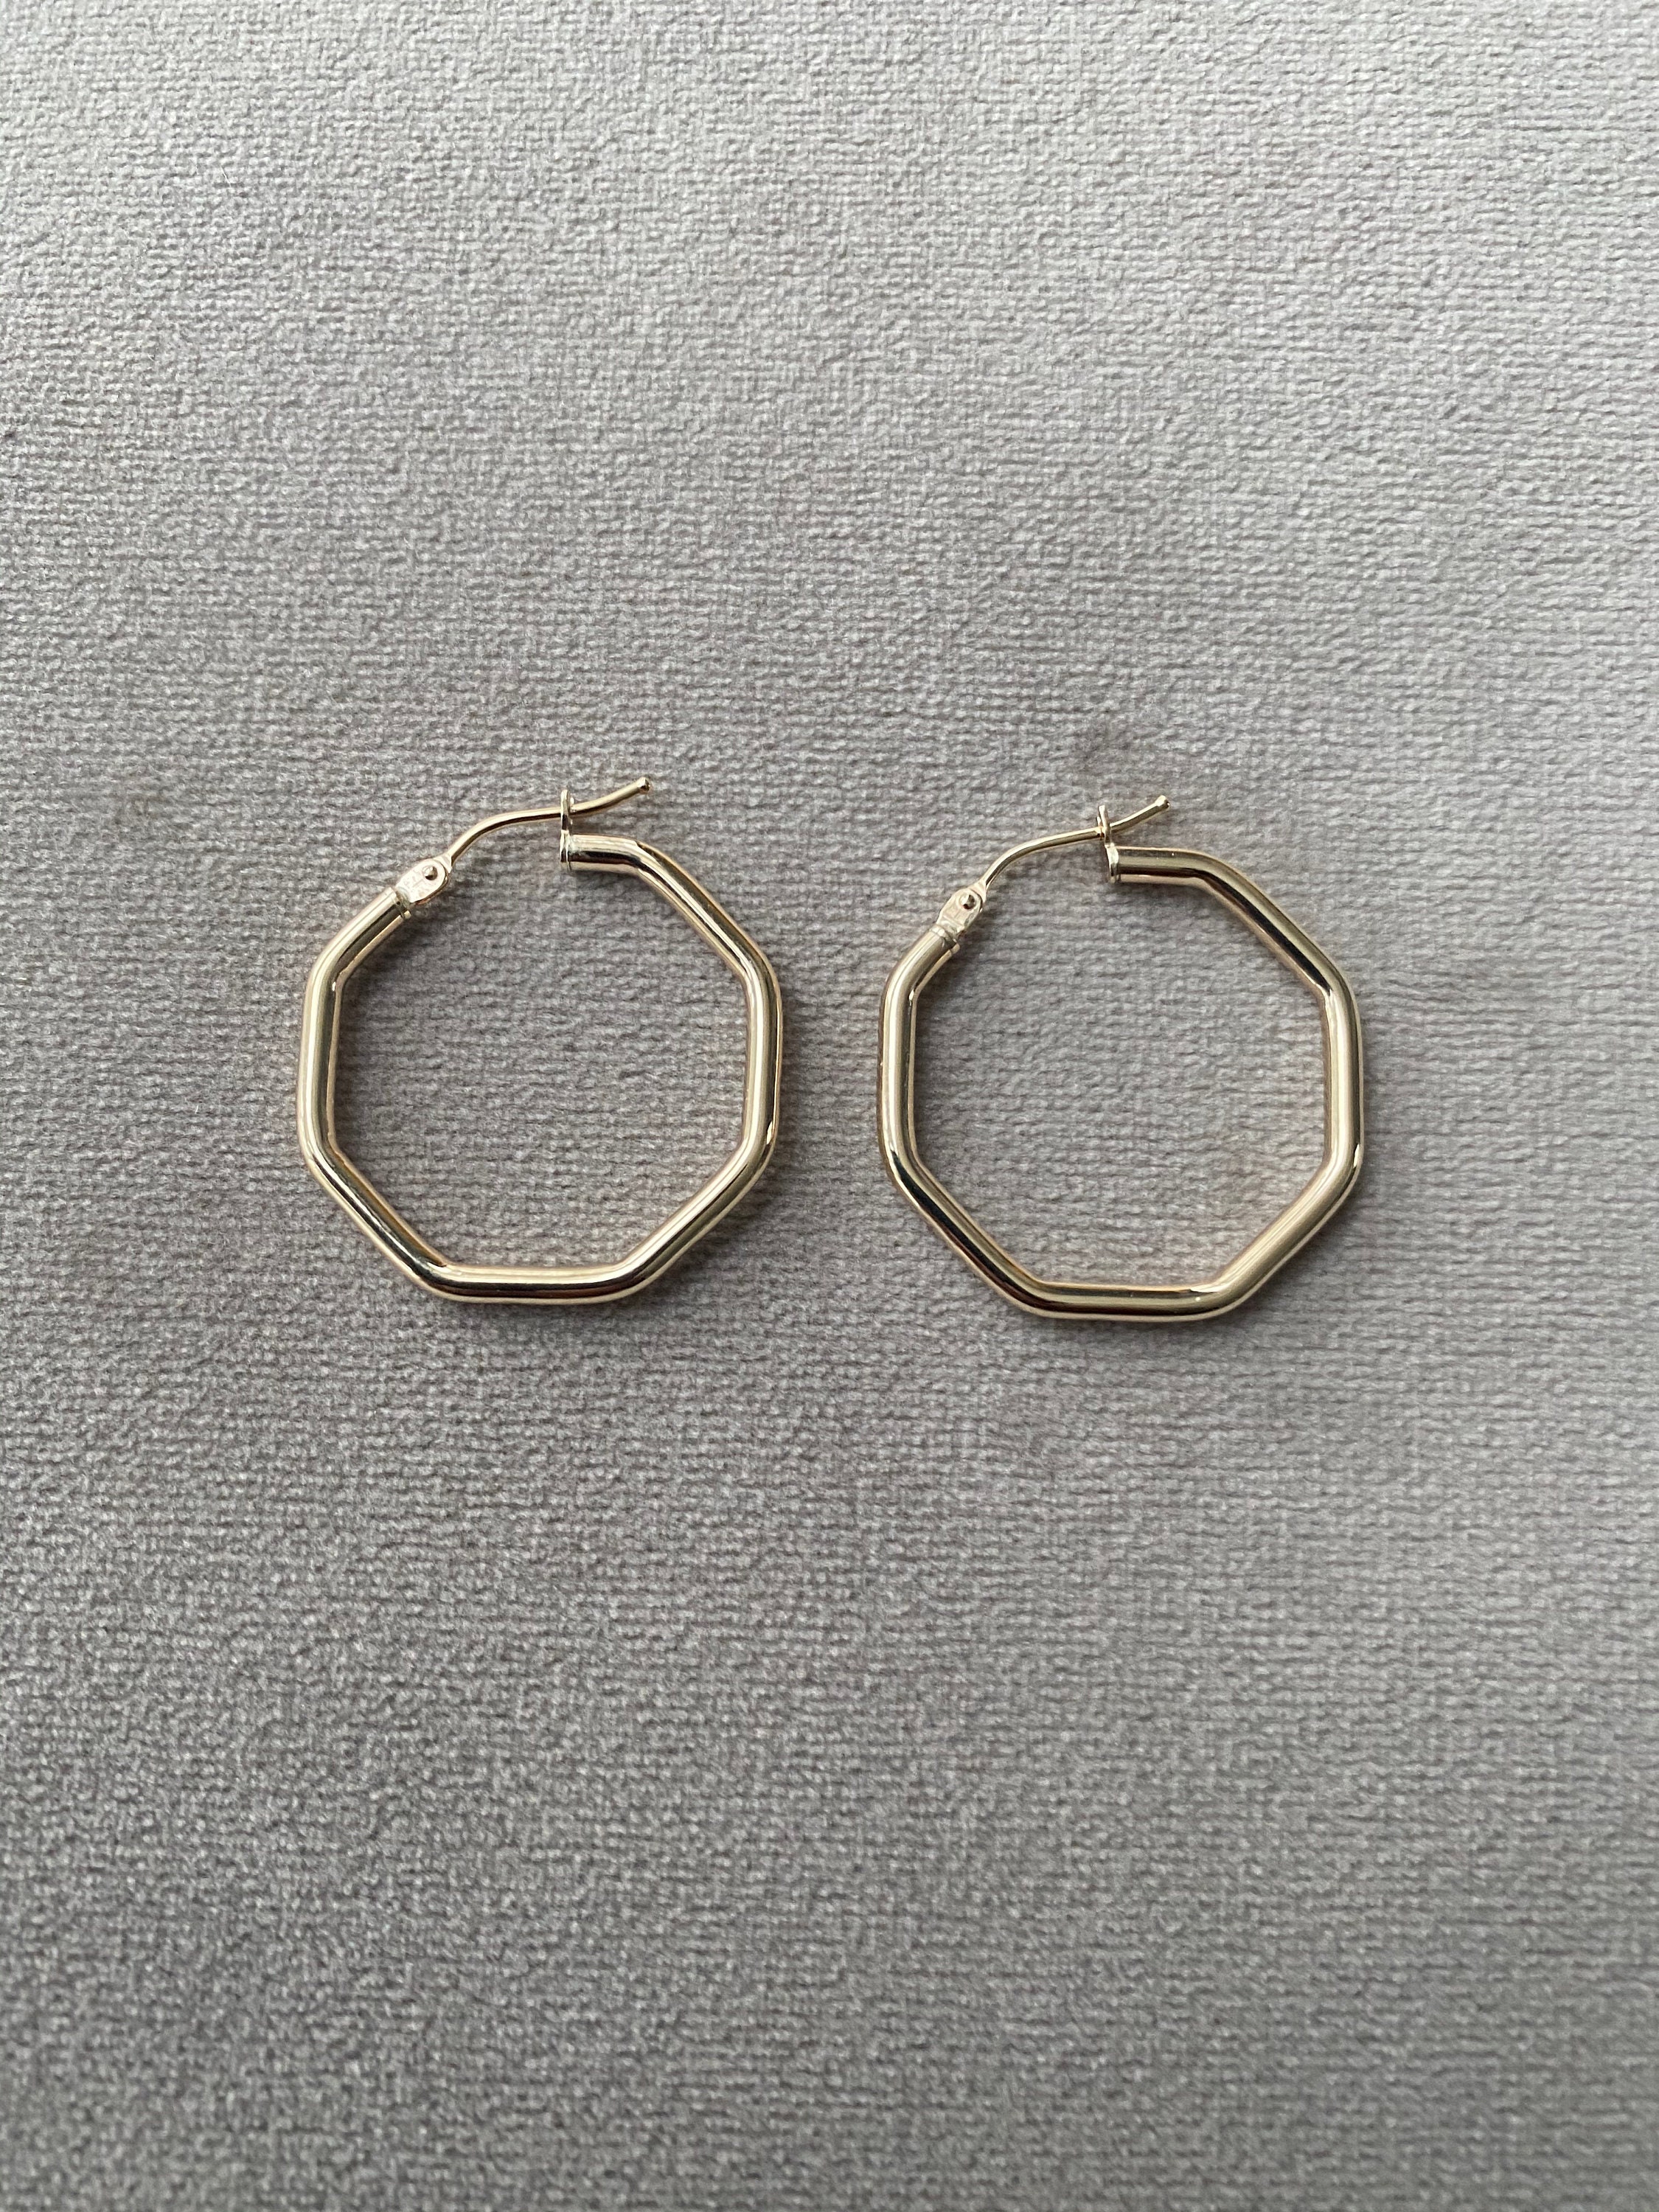 9ct Gold Octogan Hoop Earrings 9ct Yellow Gold Hoop Earrings - Etsy UK